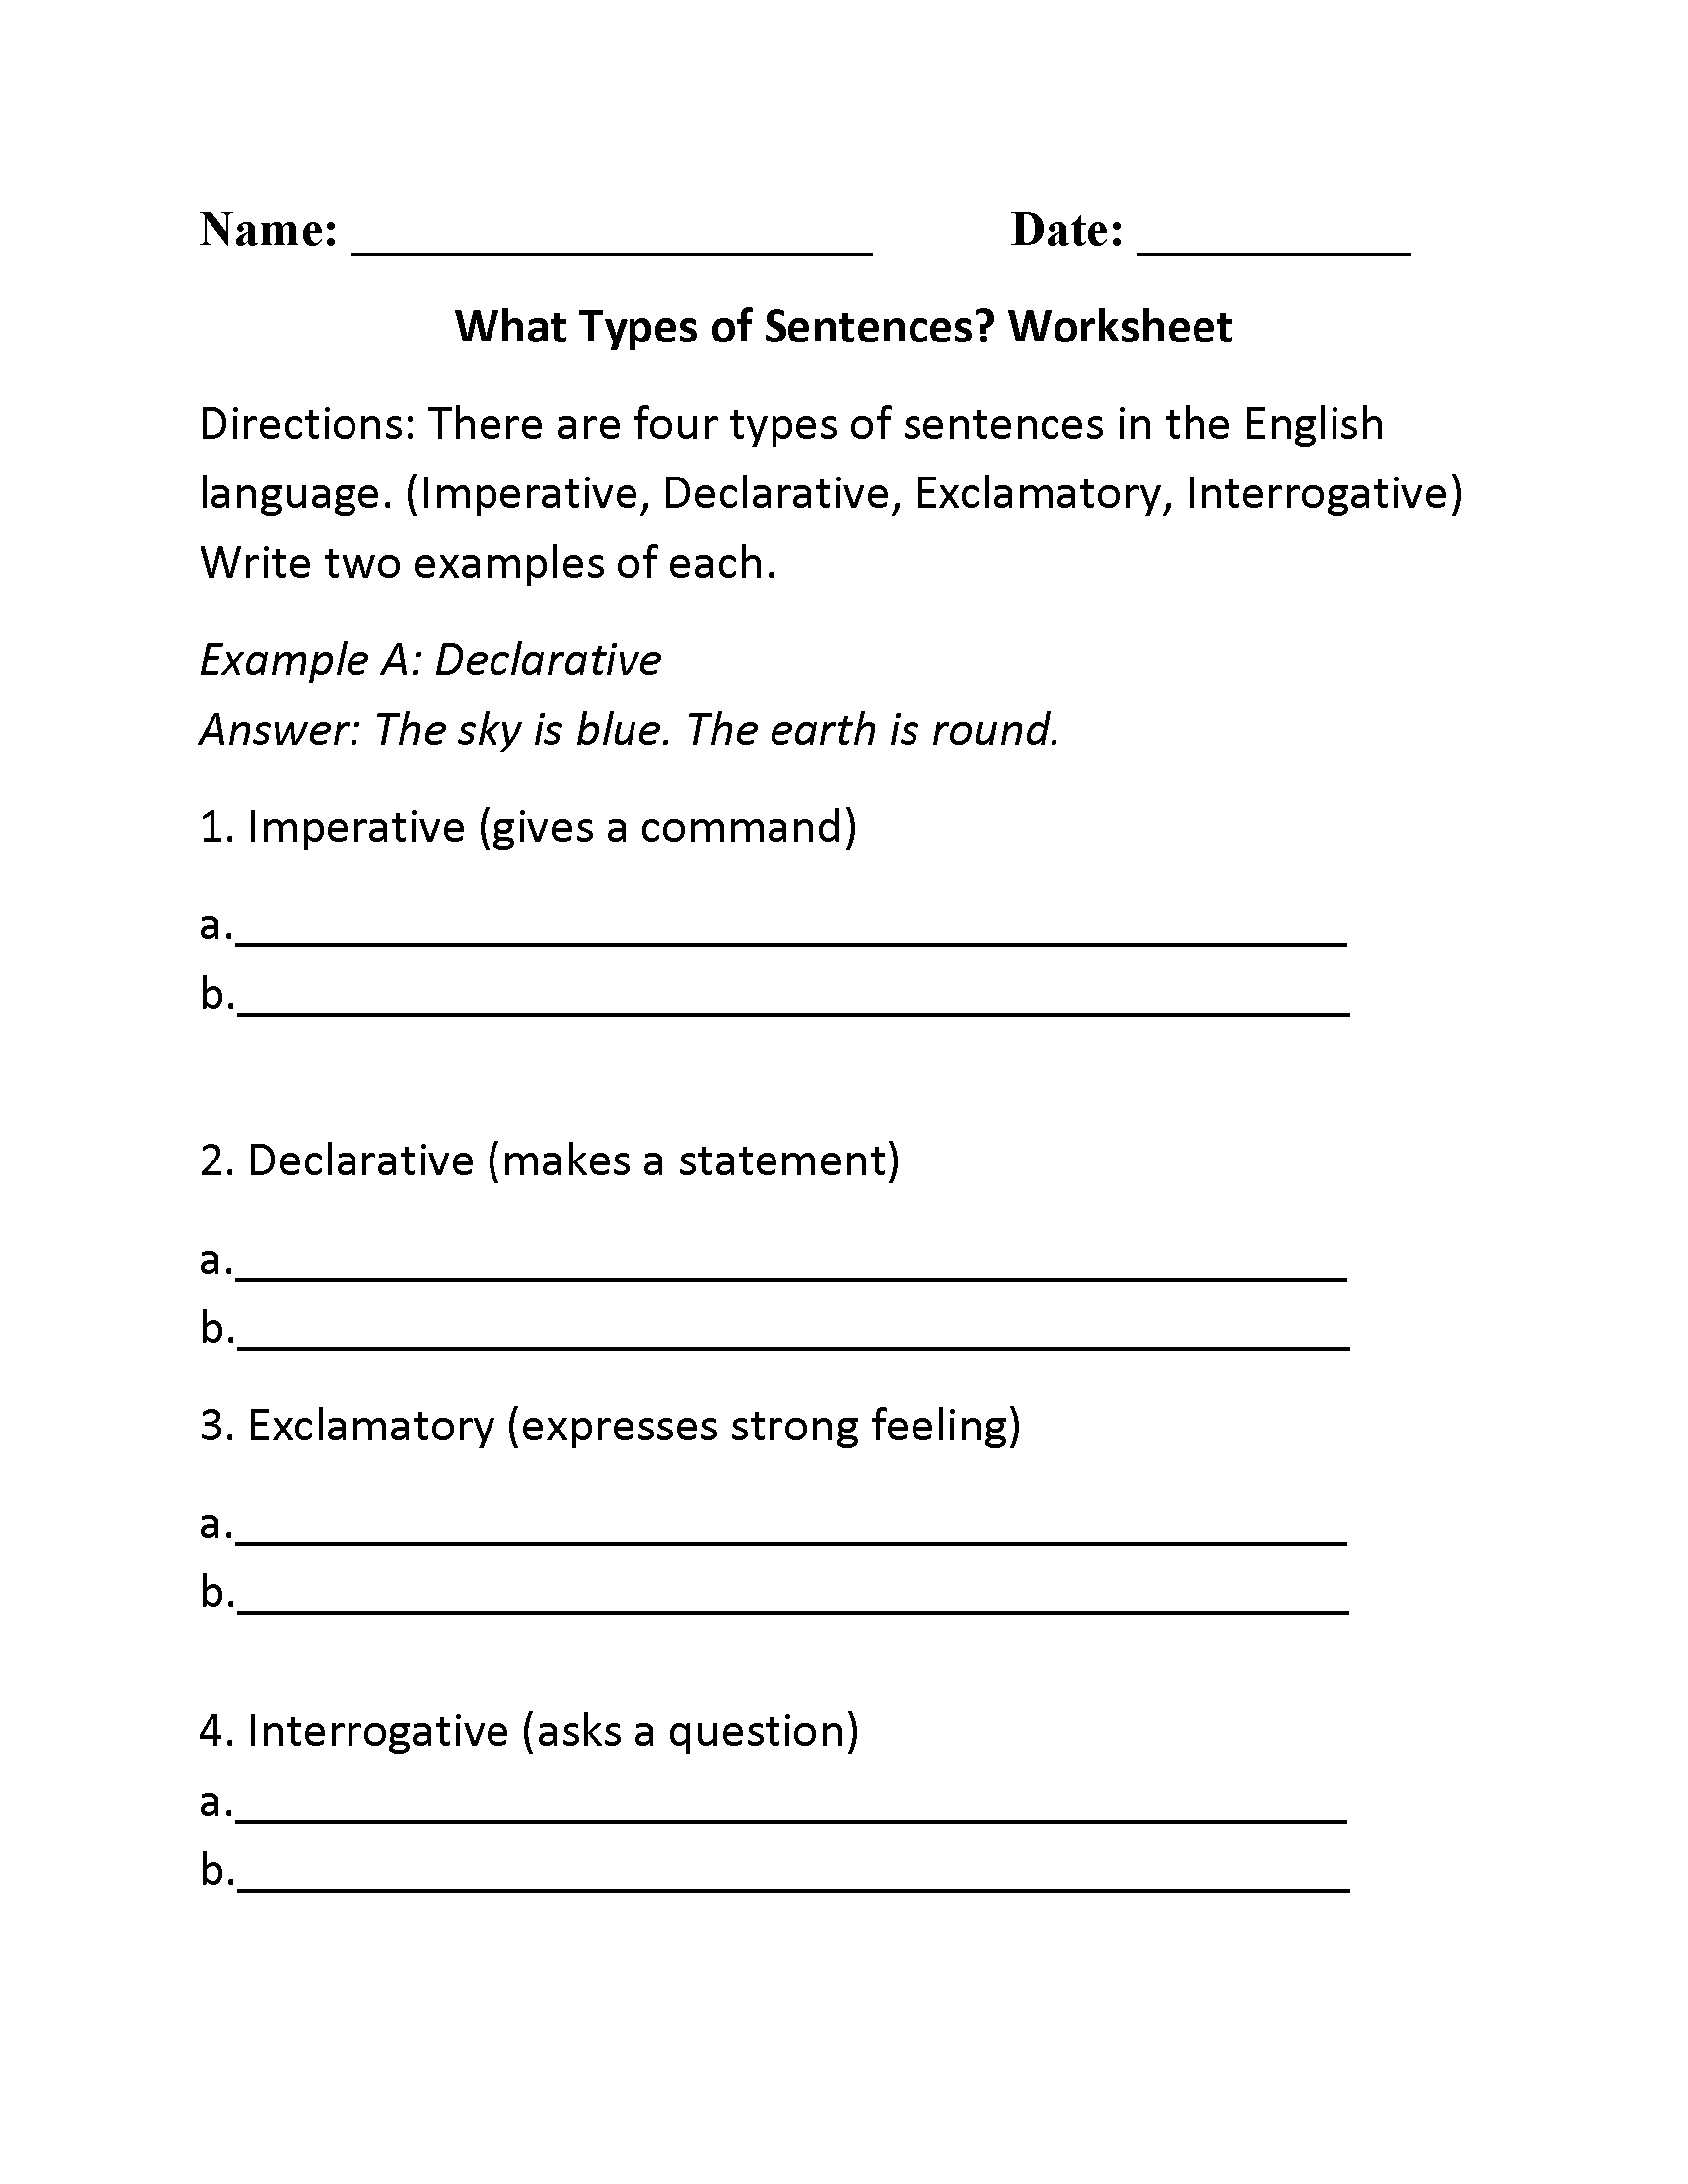 worksheet-works-identifying-sentence-types